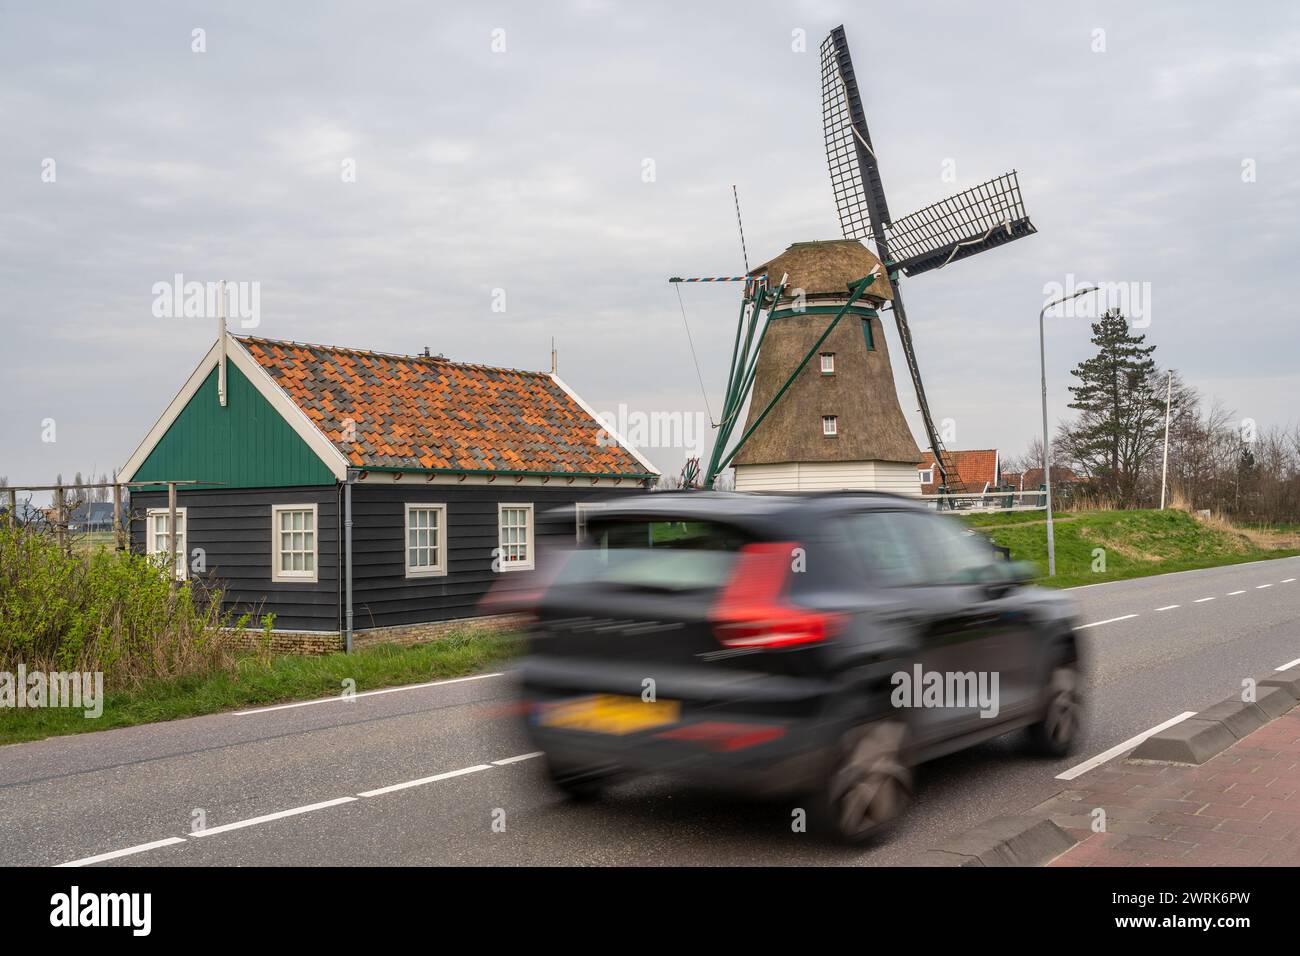 La voiture passe devant le moulin à vent hollandais traditionnel. Déplacements et circulation aux pays-Bas. Flou de mouvement intentionnel. Banque D'Images